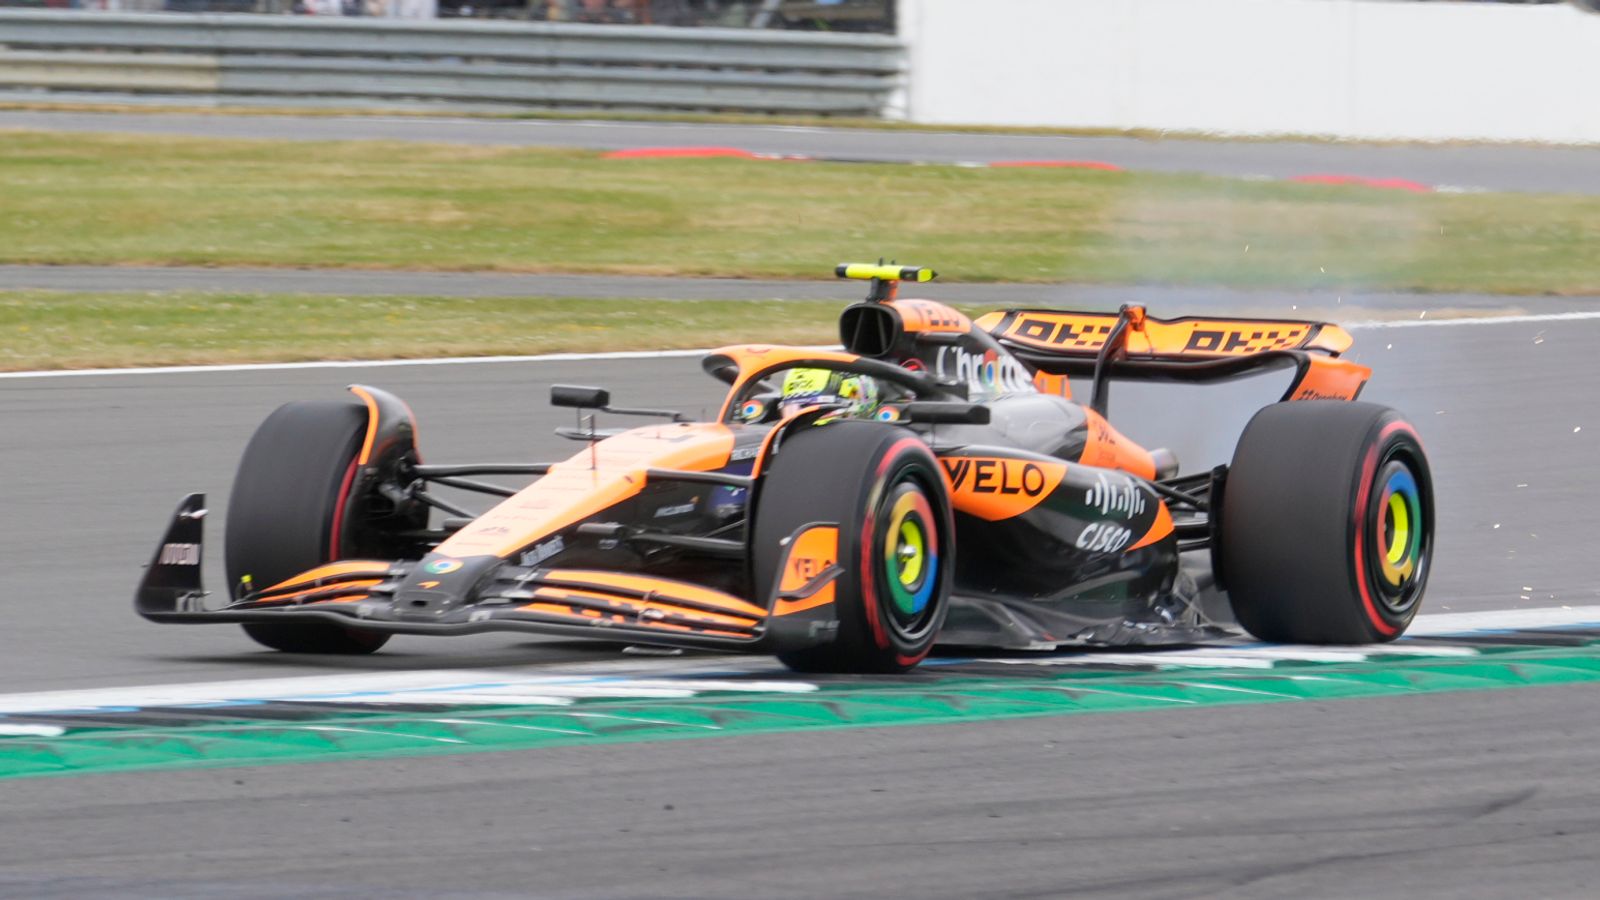 Grand Prix Inggris: Lando Norris memimpin latihan bebas pertama sementara rekan setimnya di McLaren Oscar Piastri mengalami masalah teknis |  Berita Formula 1